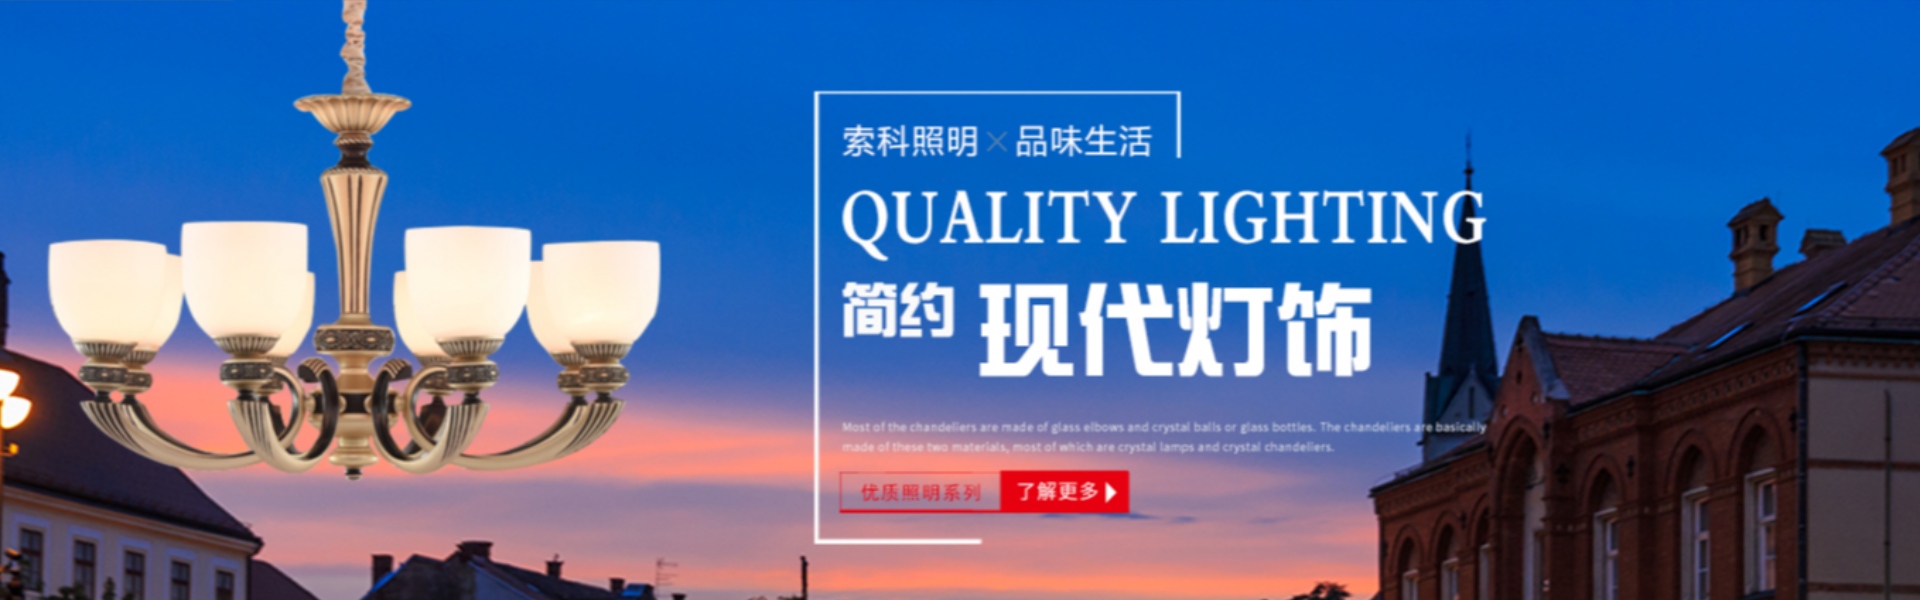 huisverlichting, buitenverlichting, zonne-verlichting,Zhongshan Suoke Lighting Electric Co., Ltd.